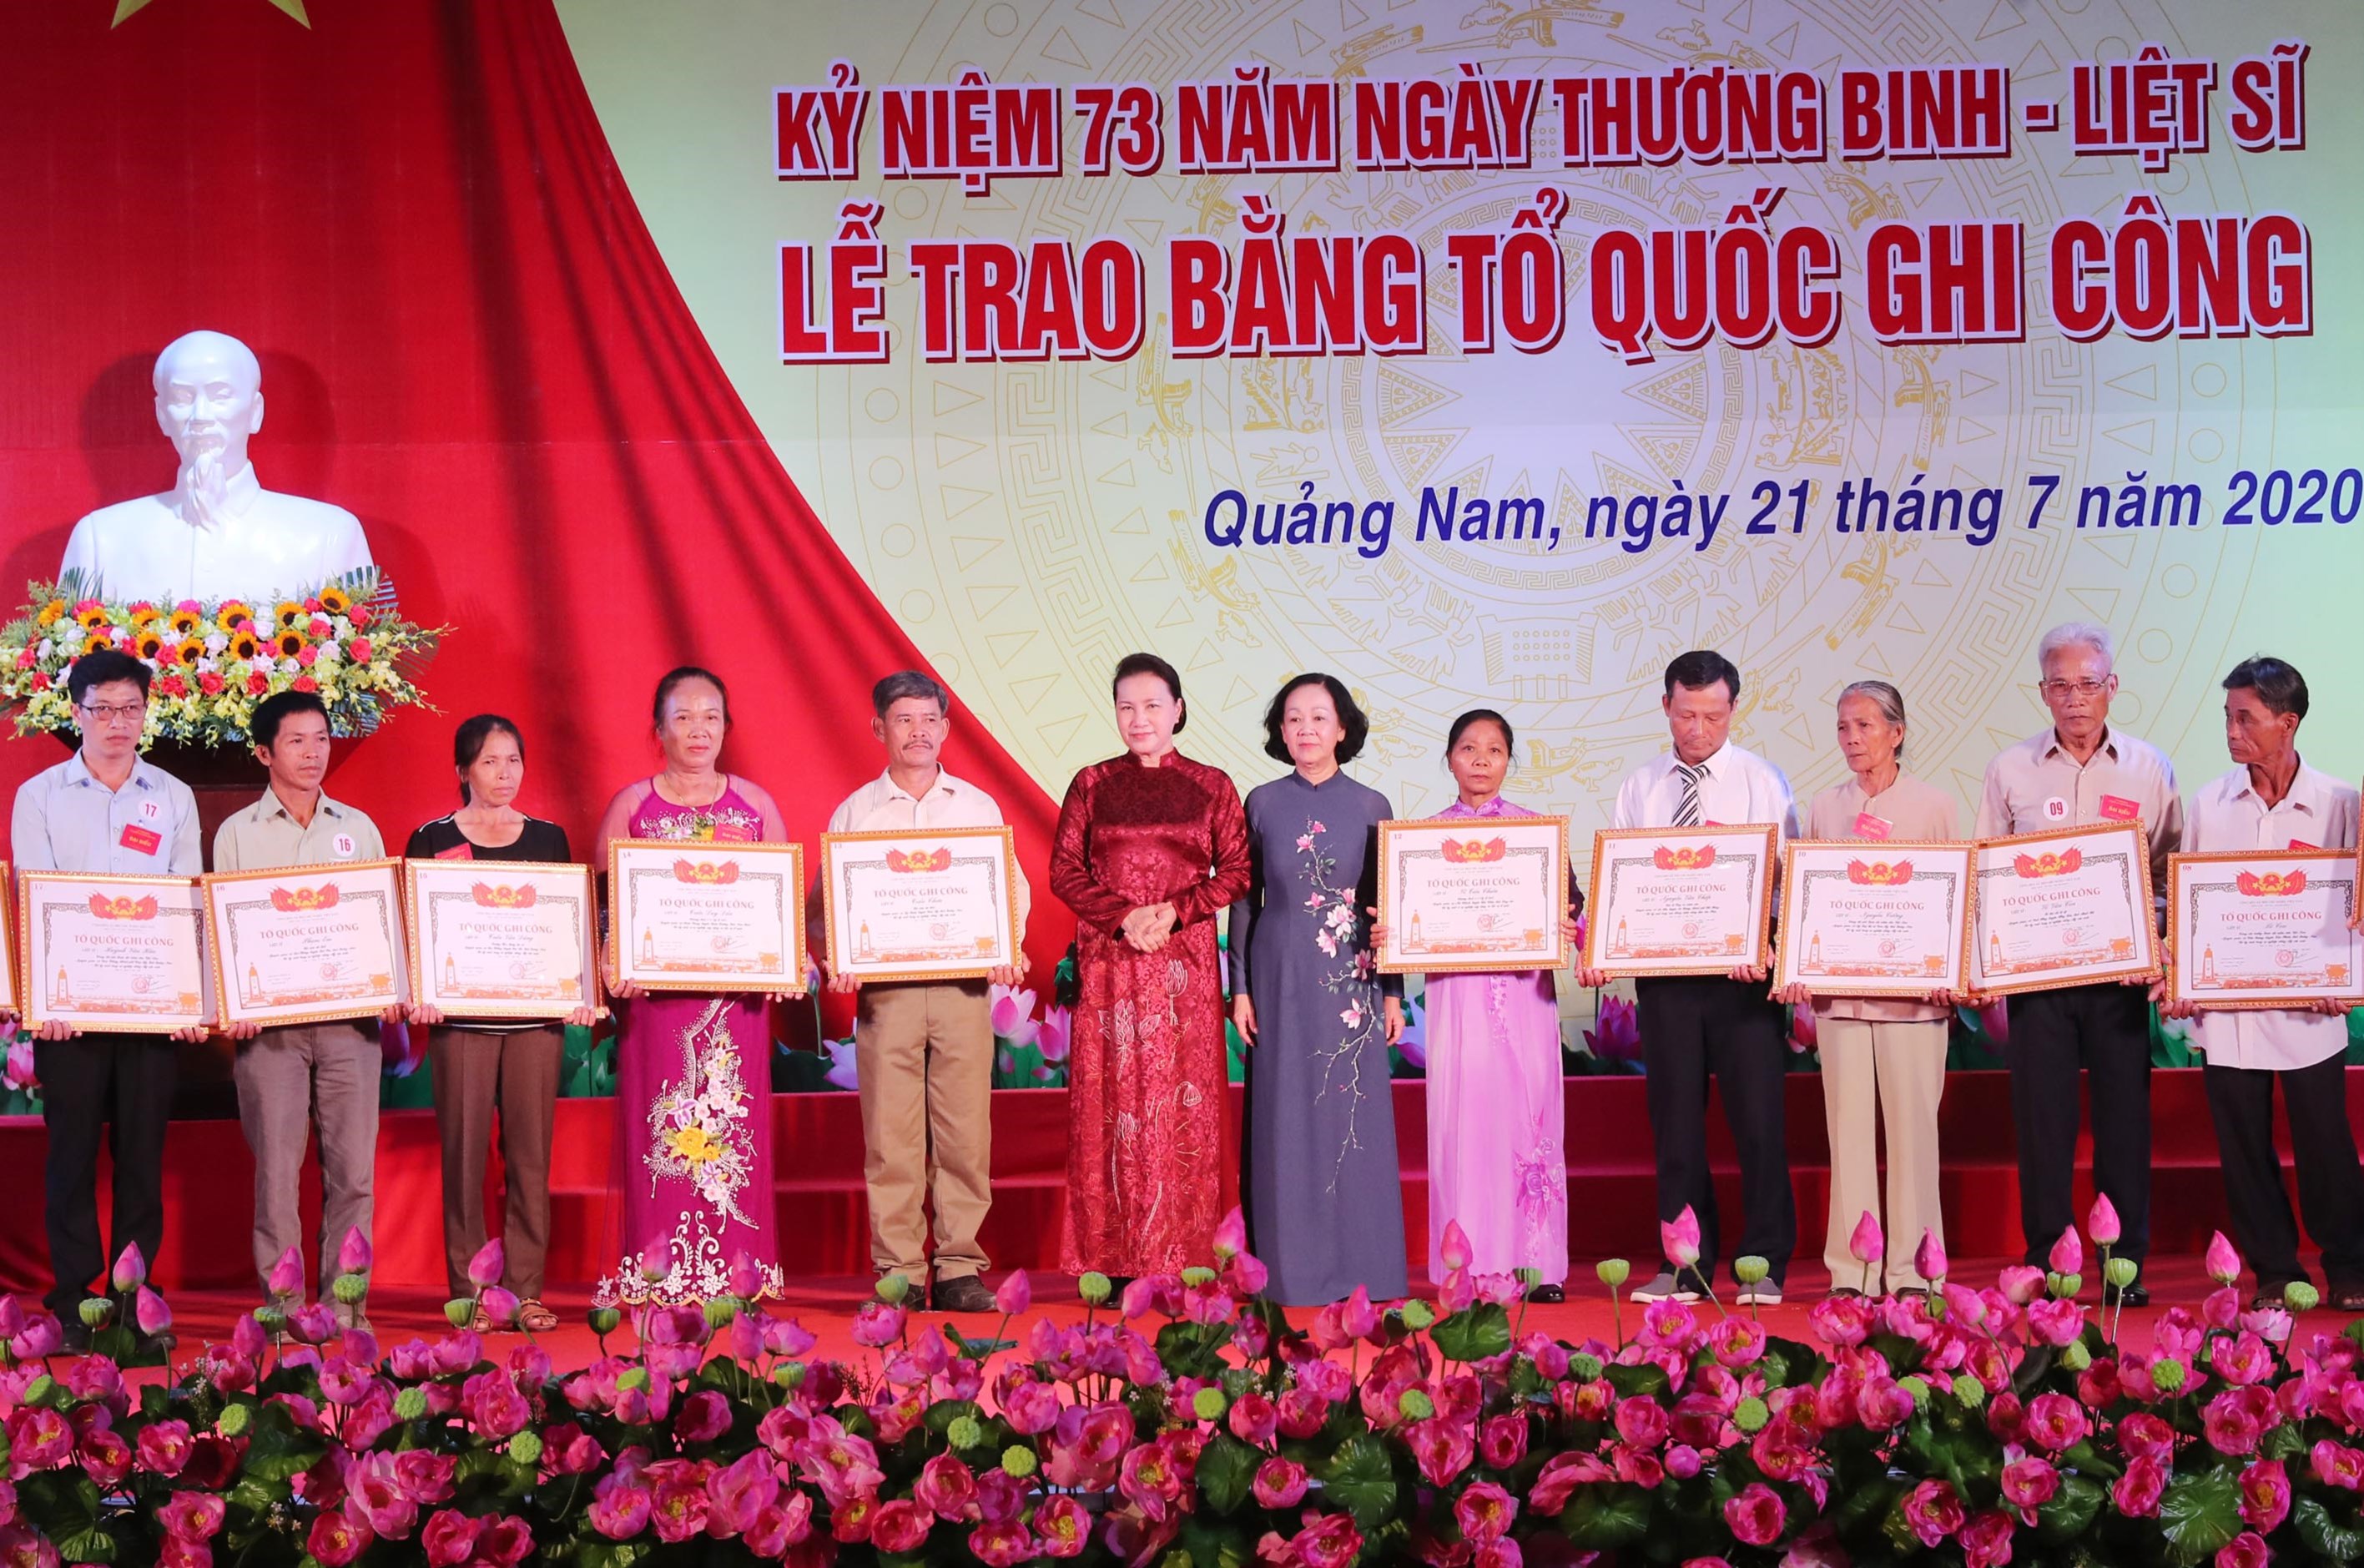 Chủ tịch Quốc hội Nguyễn Thị Kim Ngân và Trưởng Ban Dân vận Trung ương Trương Thị Mai trao Bằng Tổ quốc ghi công cho gia đình các liệt sĩ (Ảnh: TTXVN)